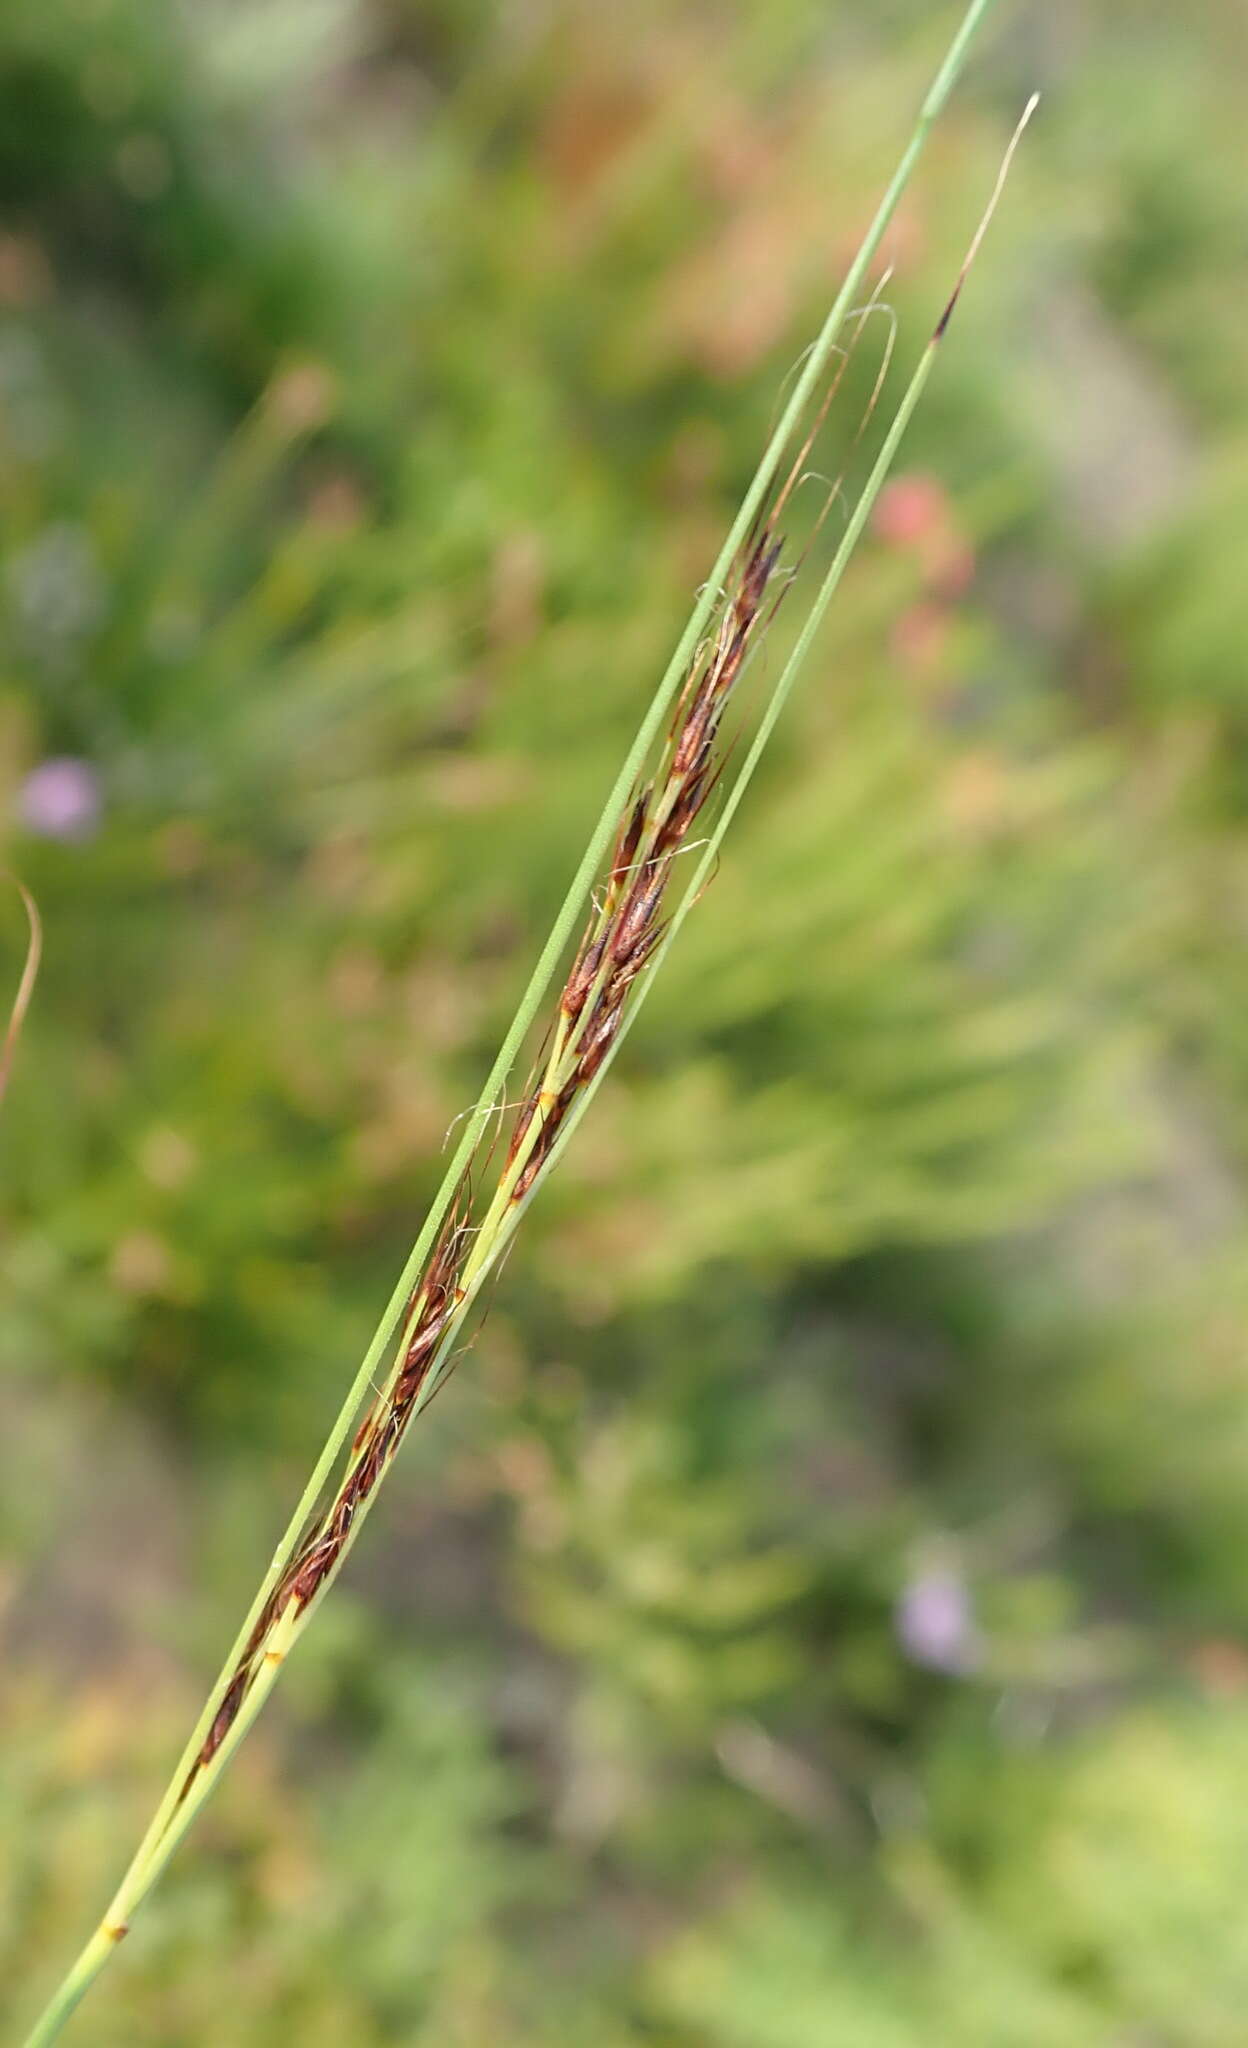 Image of Tetraria cuspidata (Rottb.) C. B. Clarke